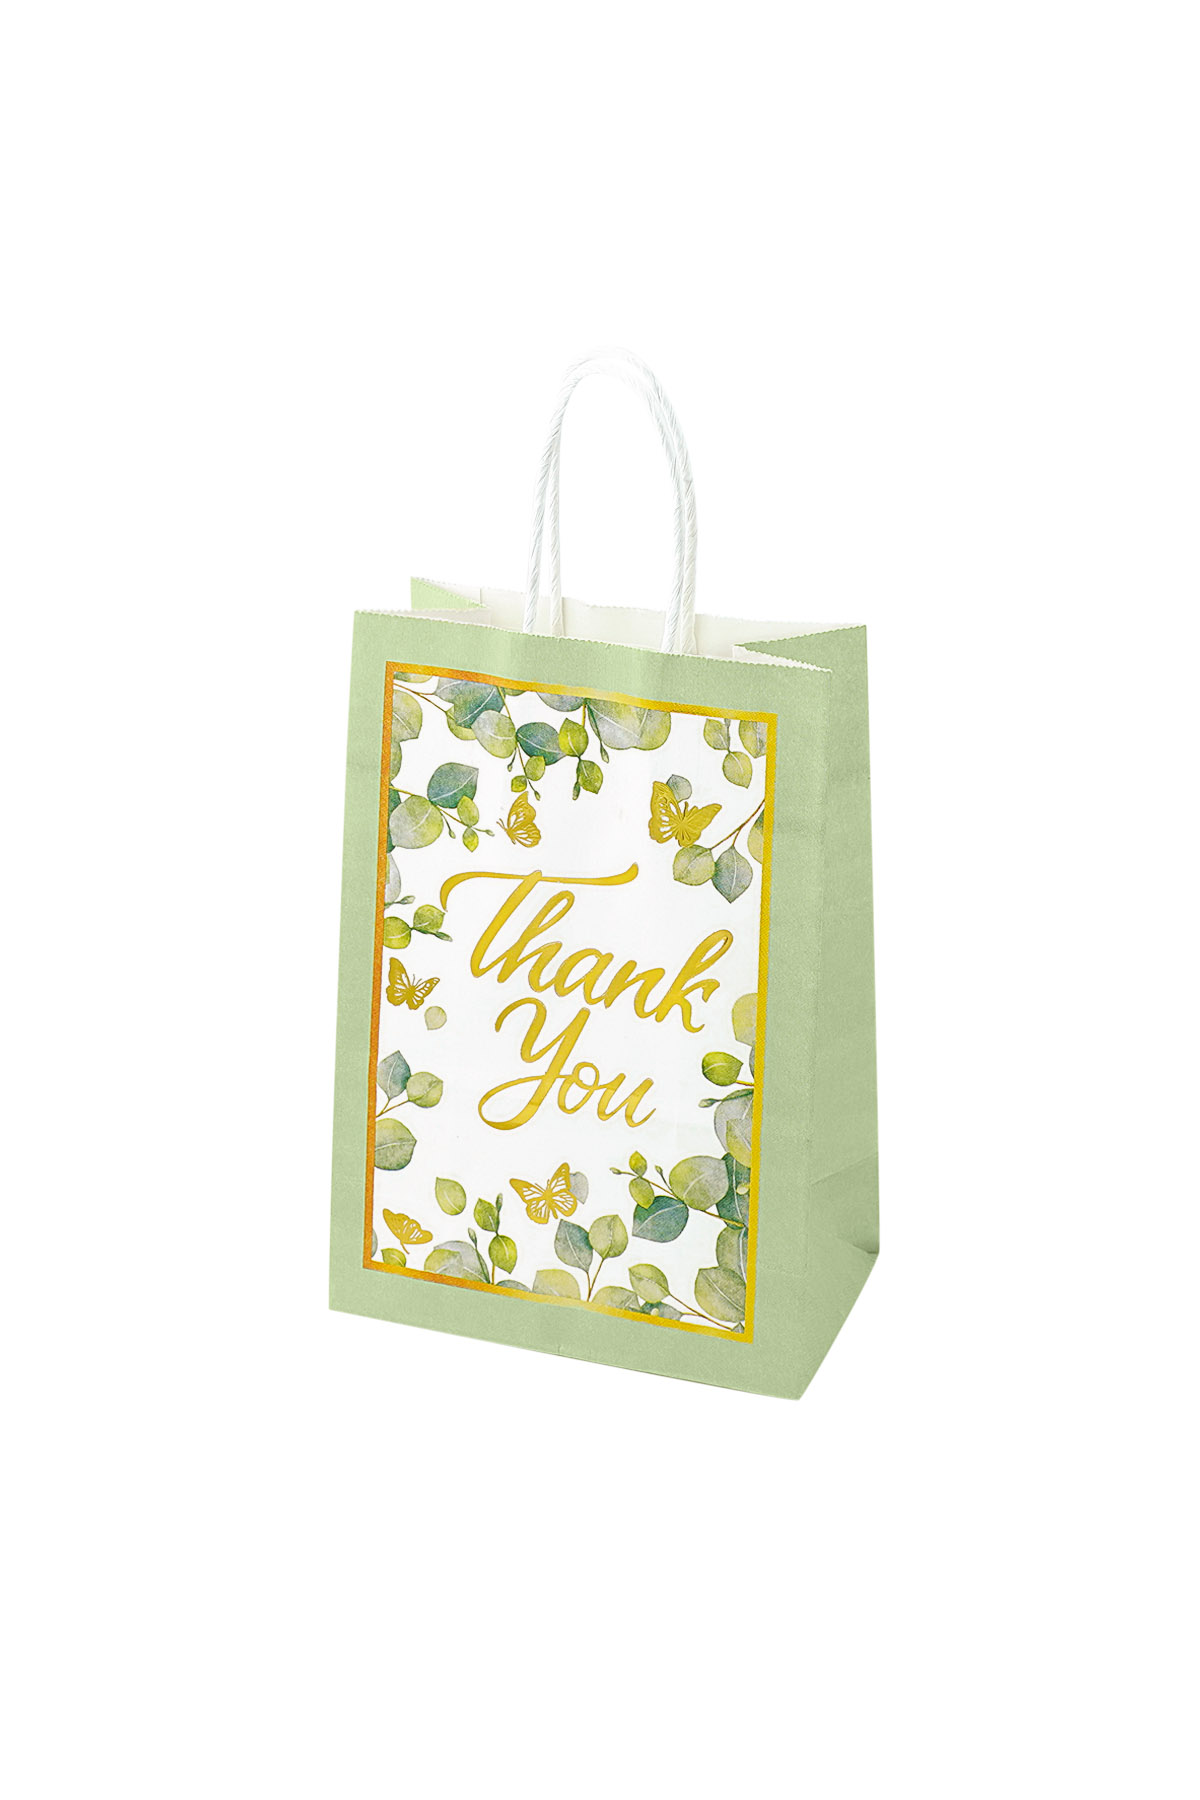 Hediye çantası teşekkür yaprakları - yeşil